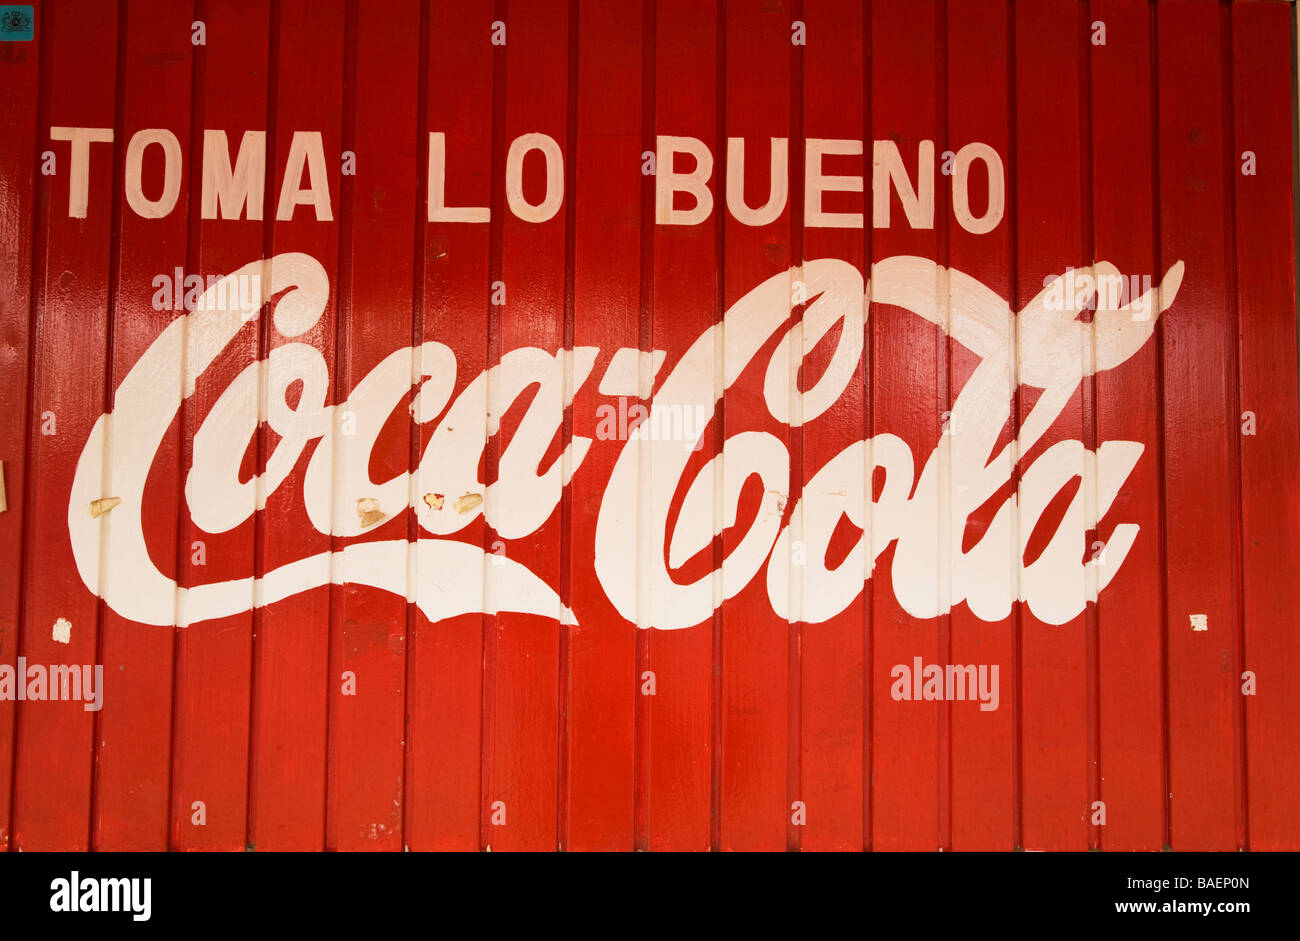 Publicité Todos Santos au Mexique pour Coca Cola en espagnol peint sur le côté du bâtiment en bois rouge Toma lo Bueno slogan Banque D'Images